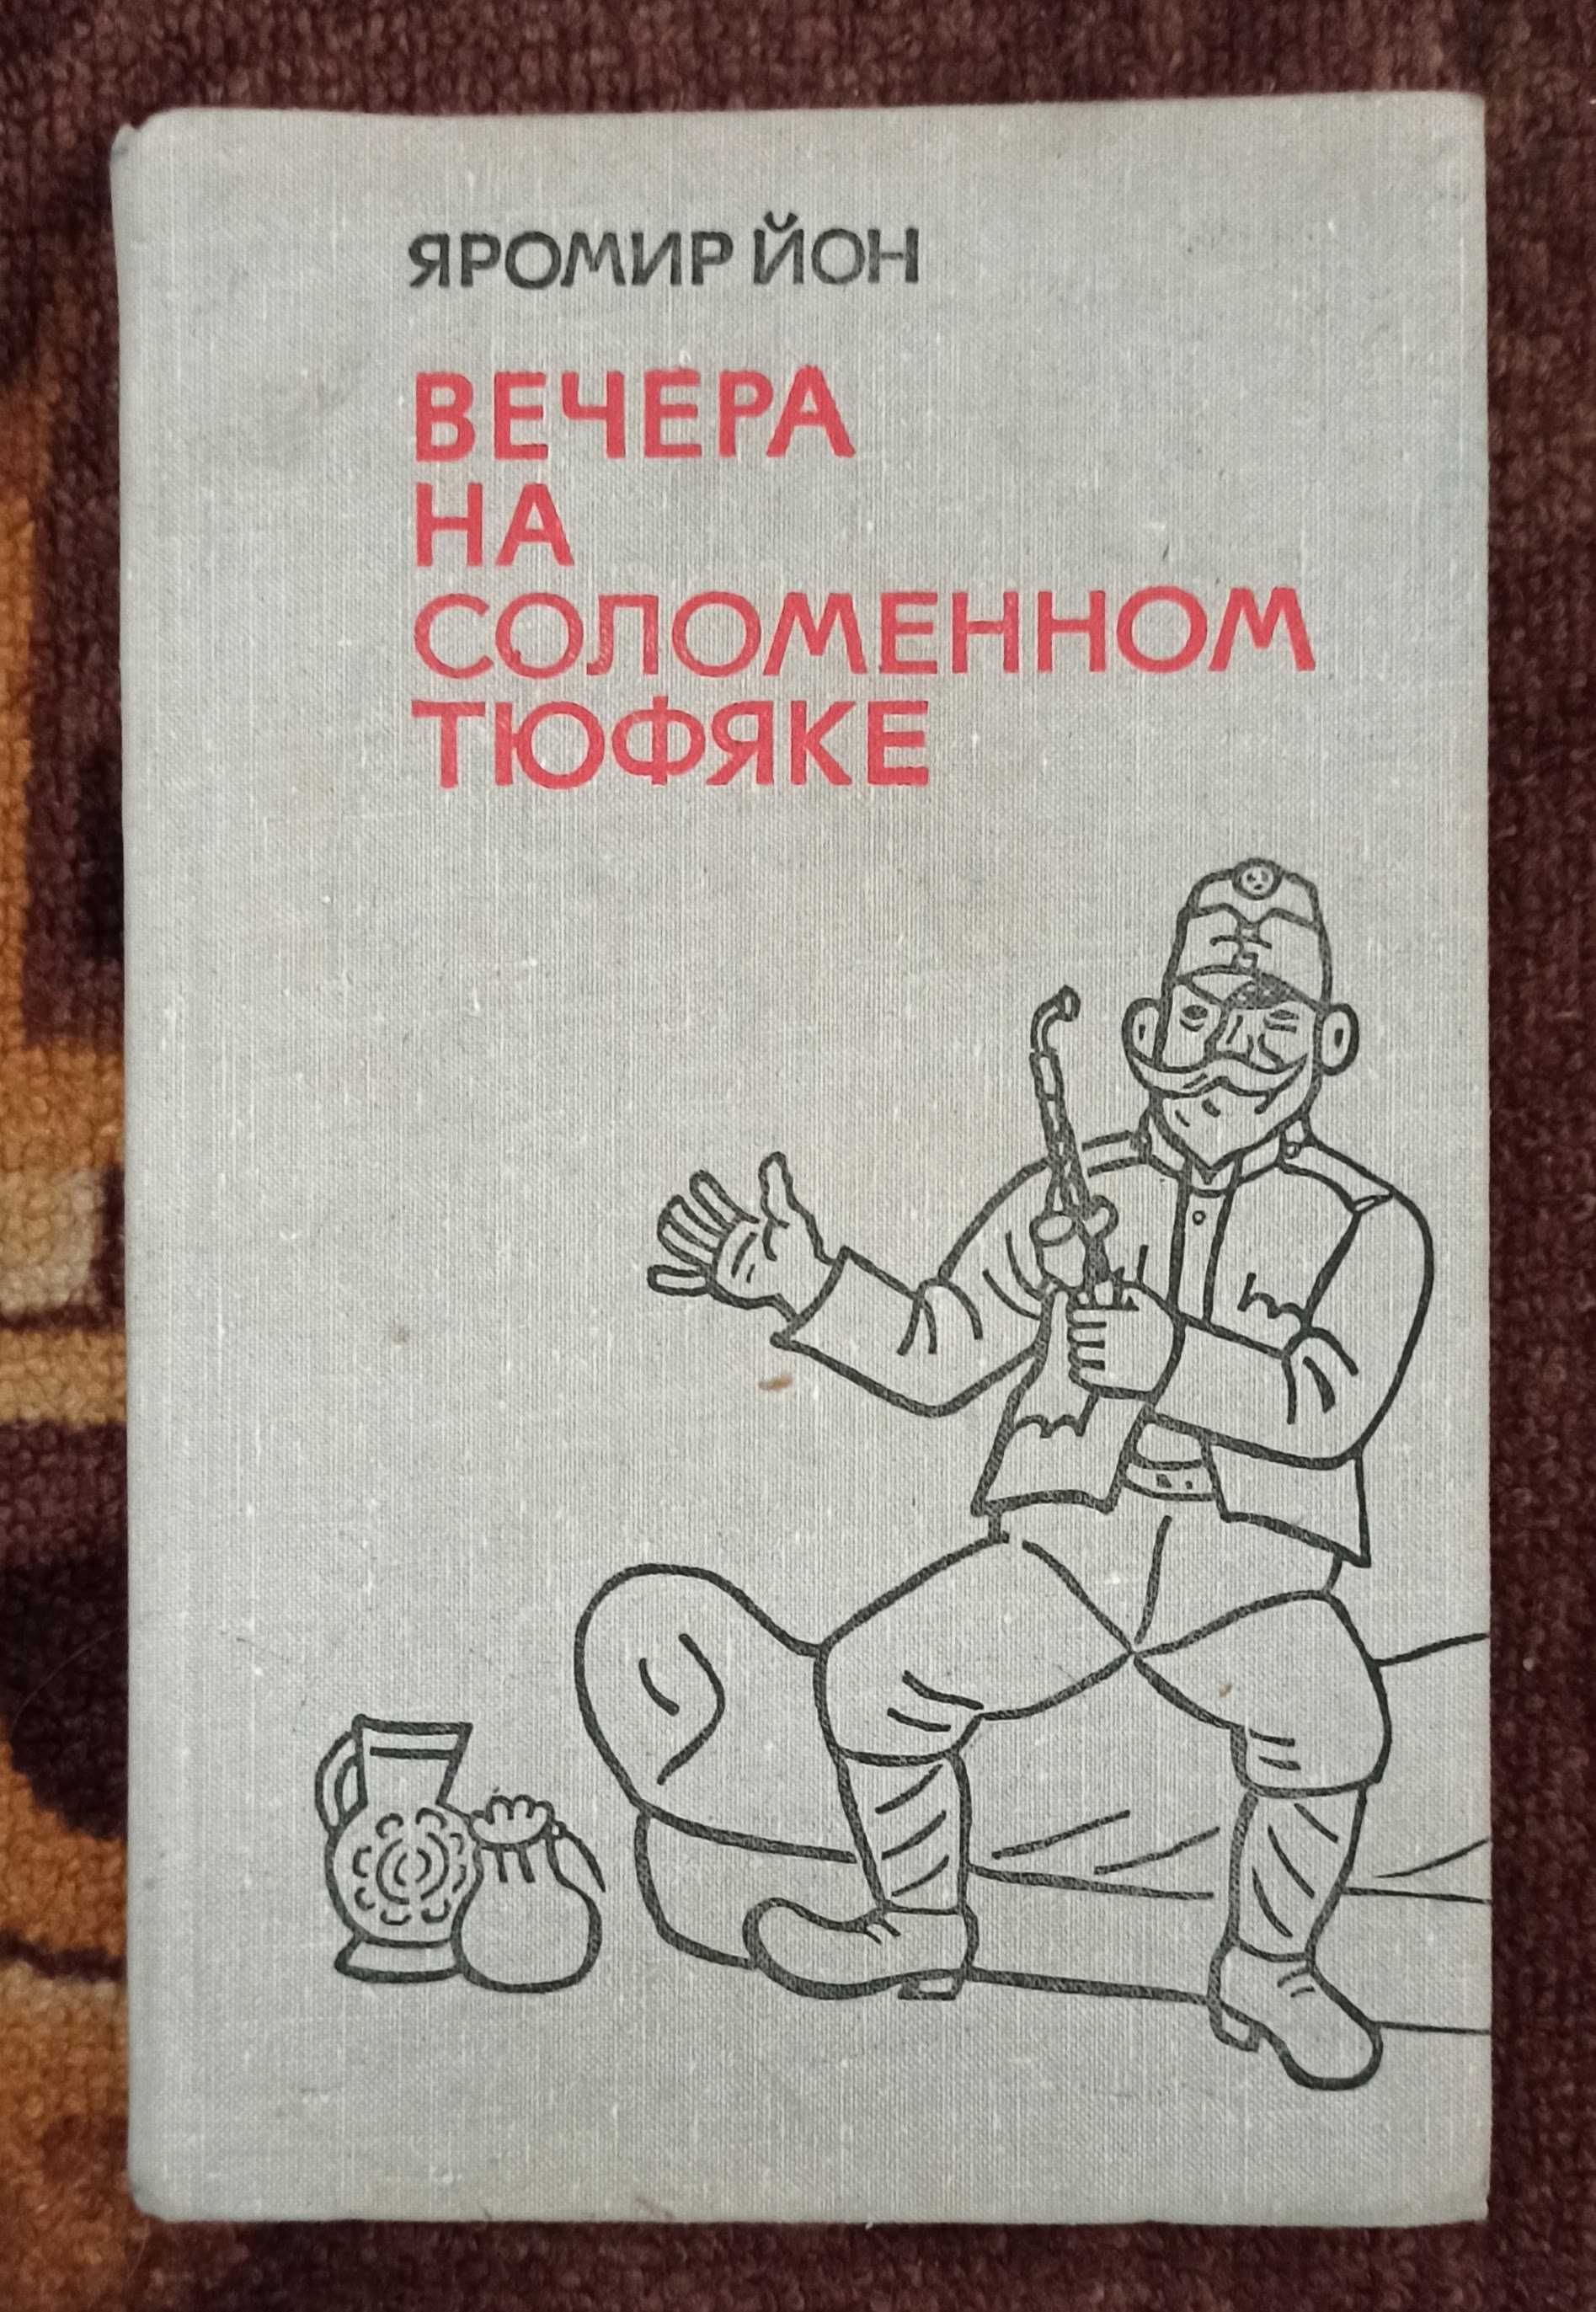 Книга Яромир Йон "Вечера на соломенном тюфяке" 1973 рік видання